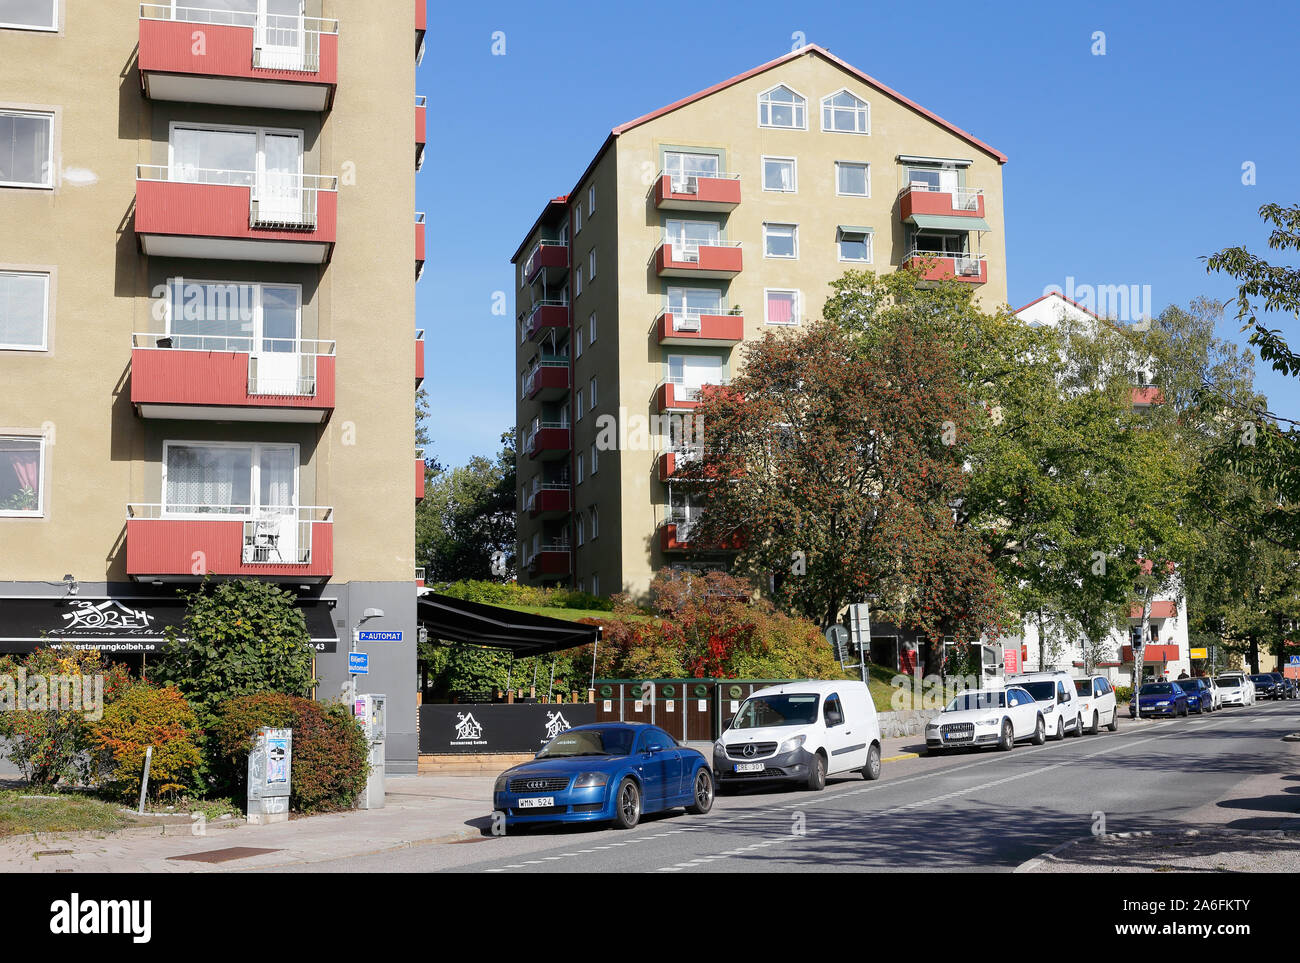 Solna, Suecia - 25 de septiembre de 2019: edificios residenciales de gran altura desde principios de la década de 1950 a lo largo de la calle Rasundavagen158, 156 y 154. Año de constructi Foto de stock